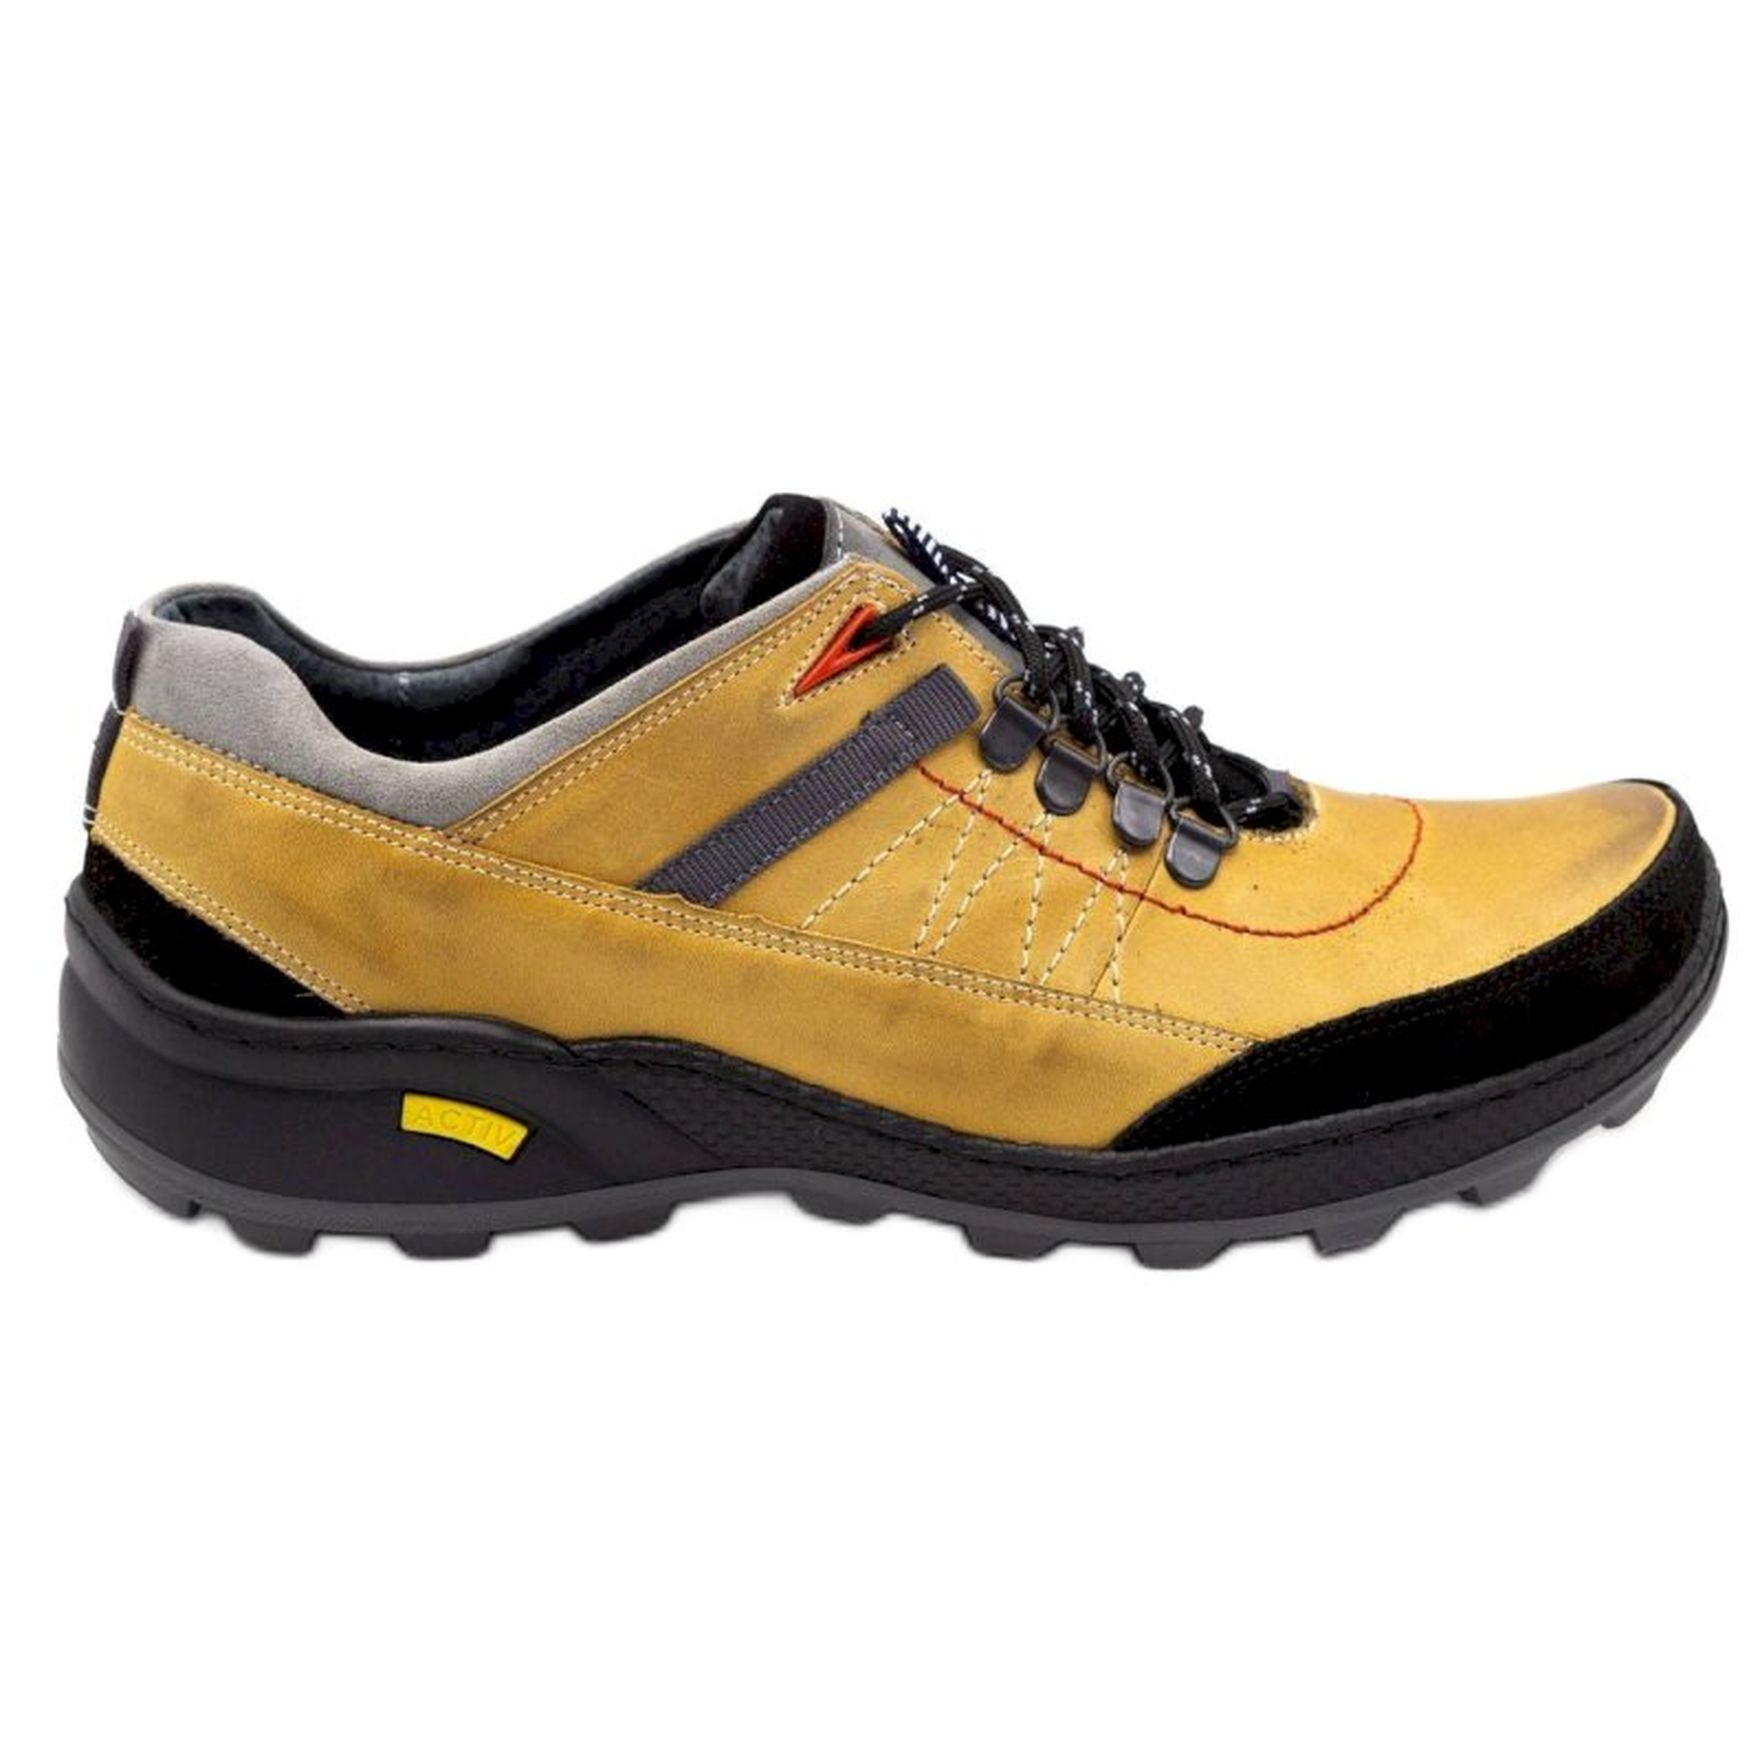 Olivier Męskie buty trekkingowe 274GT zółte żółte